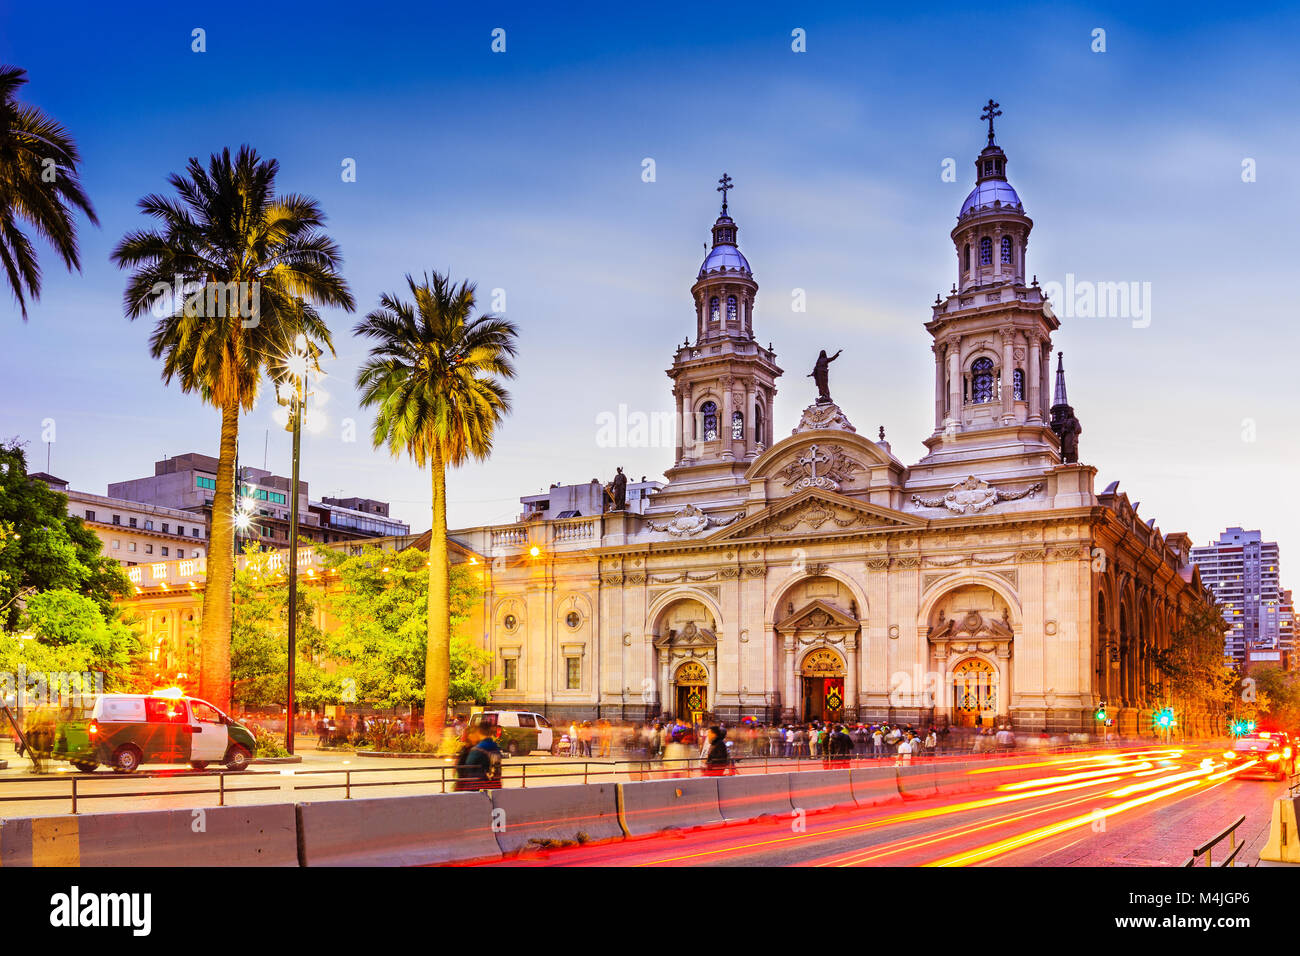 Plaza de Armas in Santiago de Cile, Cile Foto Stock